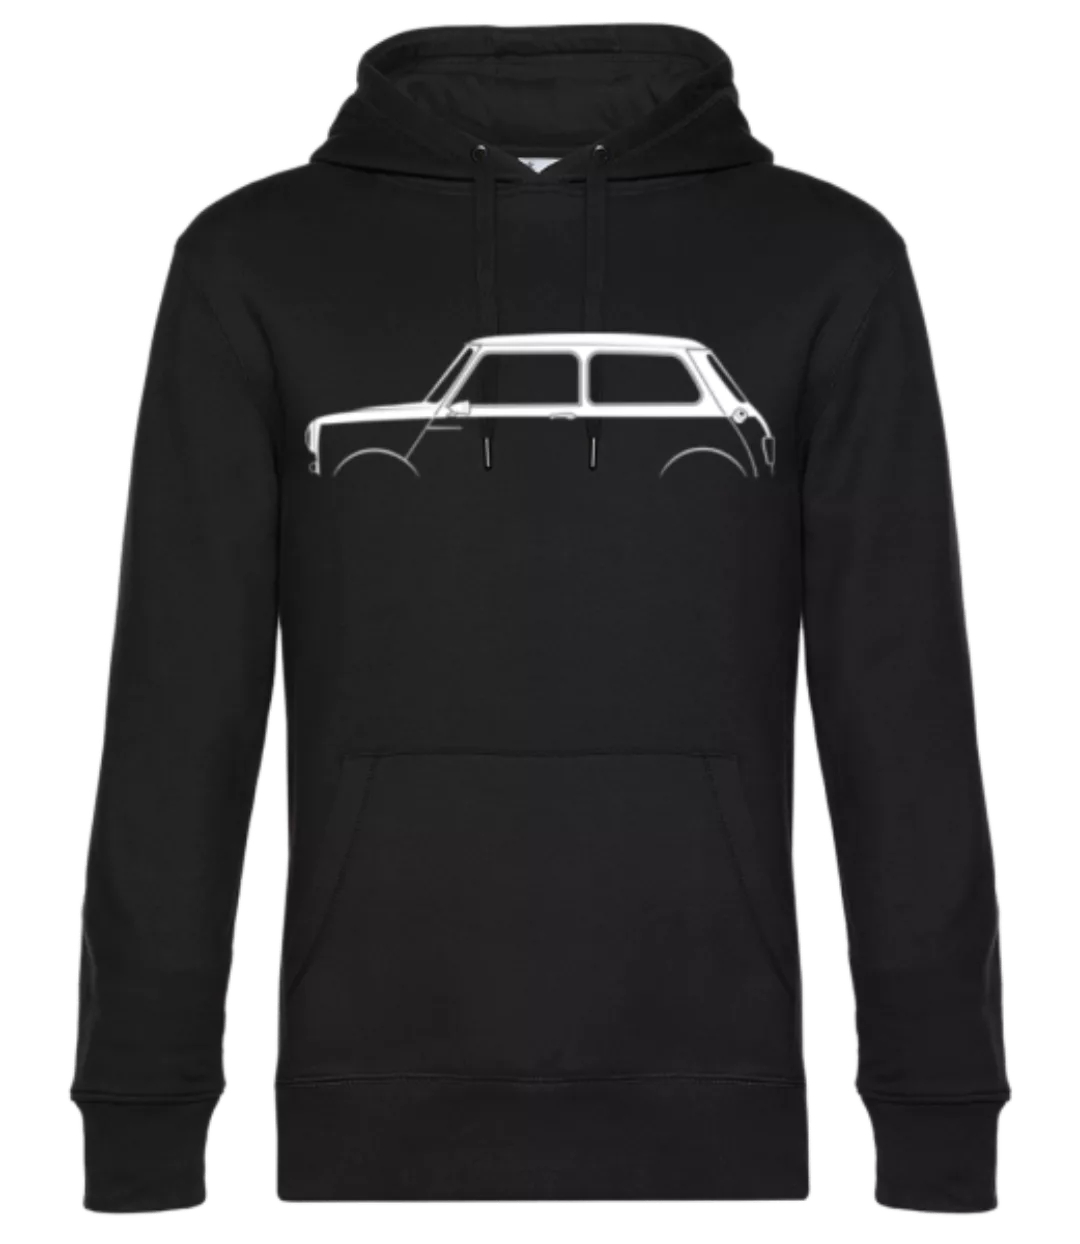 'Mini Cooper Mk I' Silhouette · Unisex Premium Hoodie günstig online kaufen